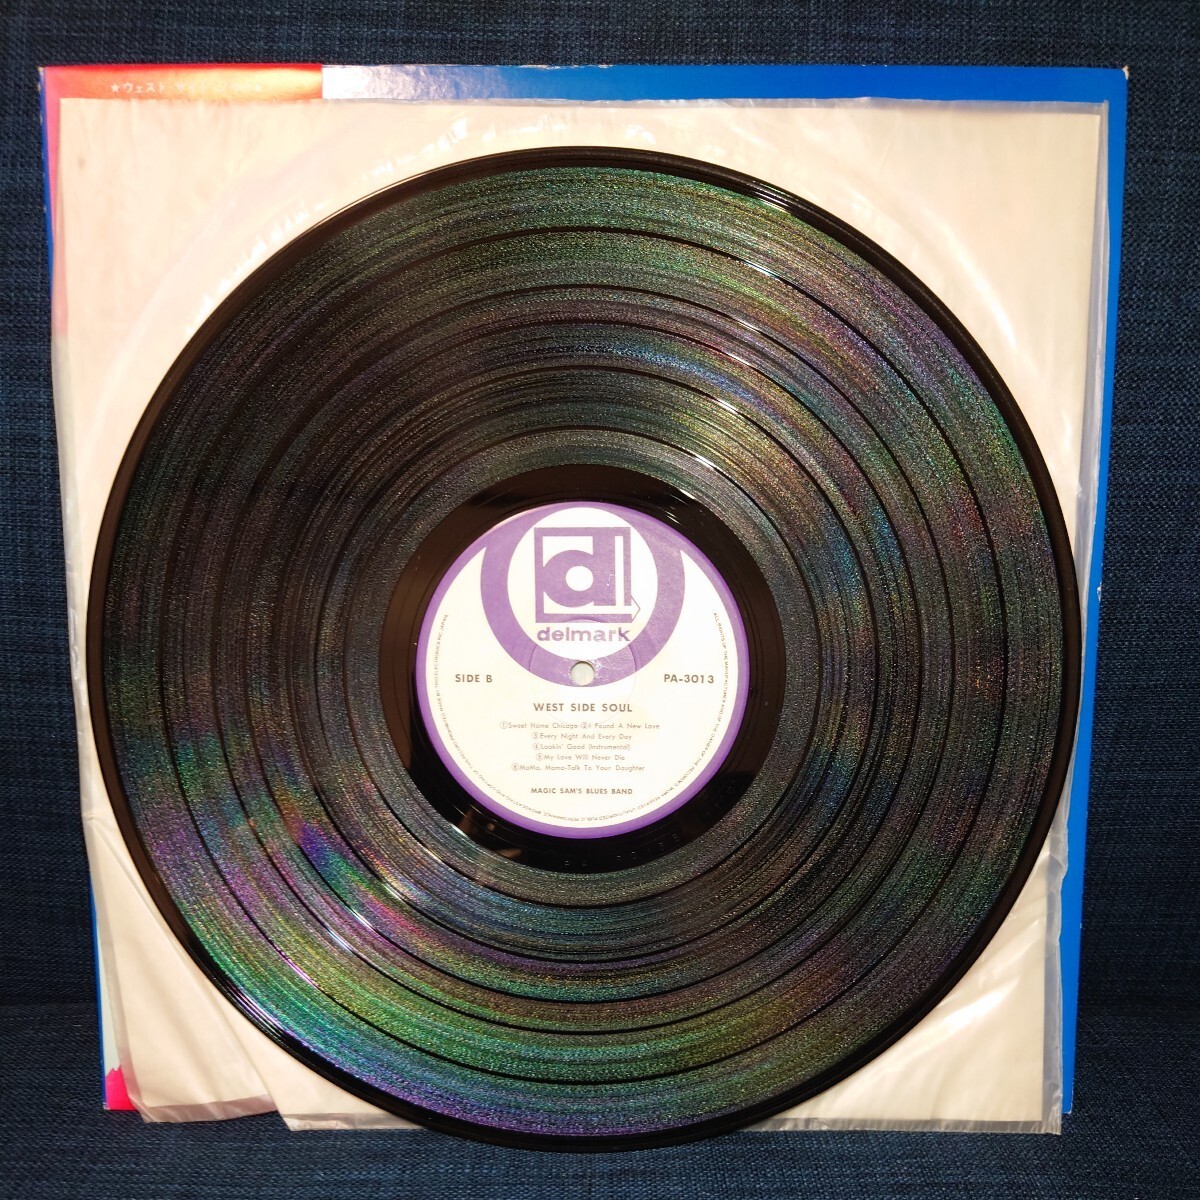 中古 レコード LP ★ 帯付 マジック・サムズ・ブルース・バンド MAGIC SAM BLUES BAND 『 West Side Soul 』PA-3013 JAPAN_画像6